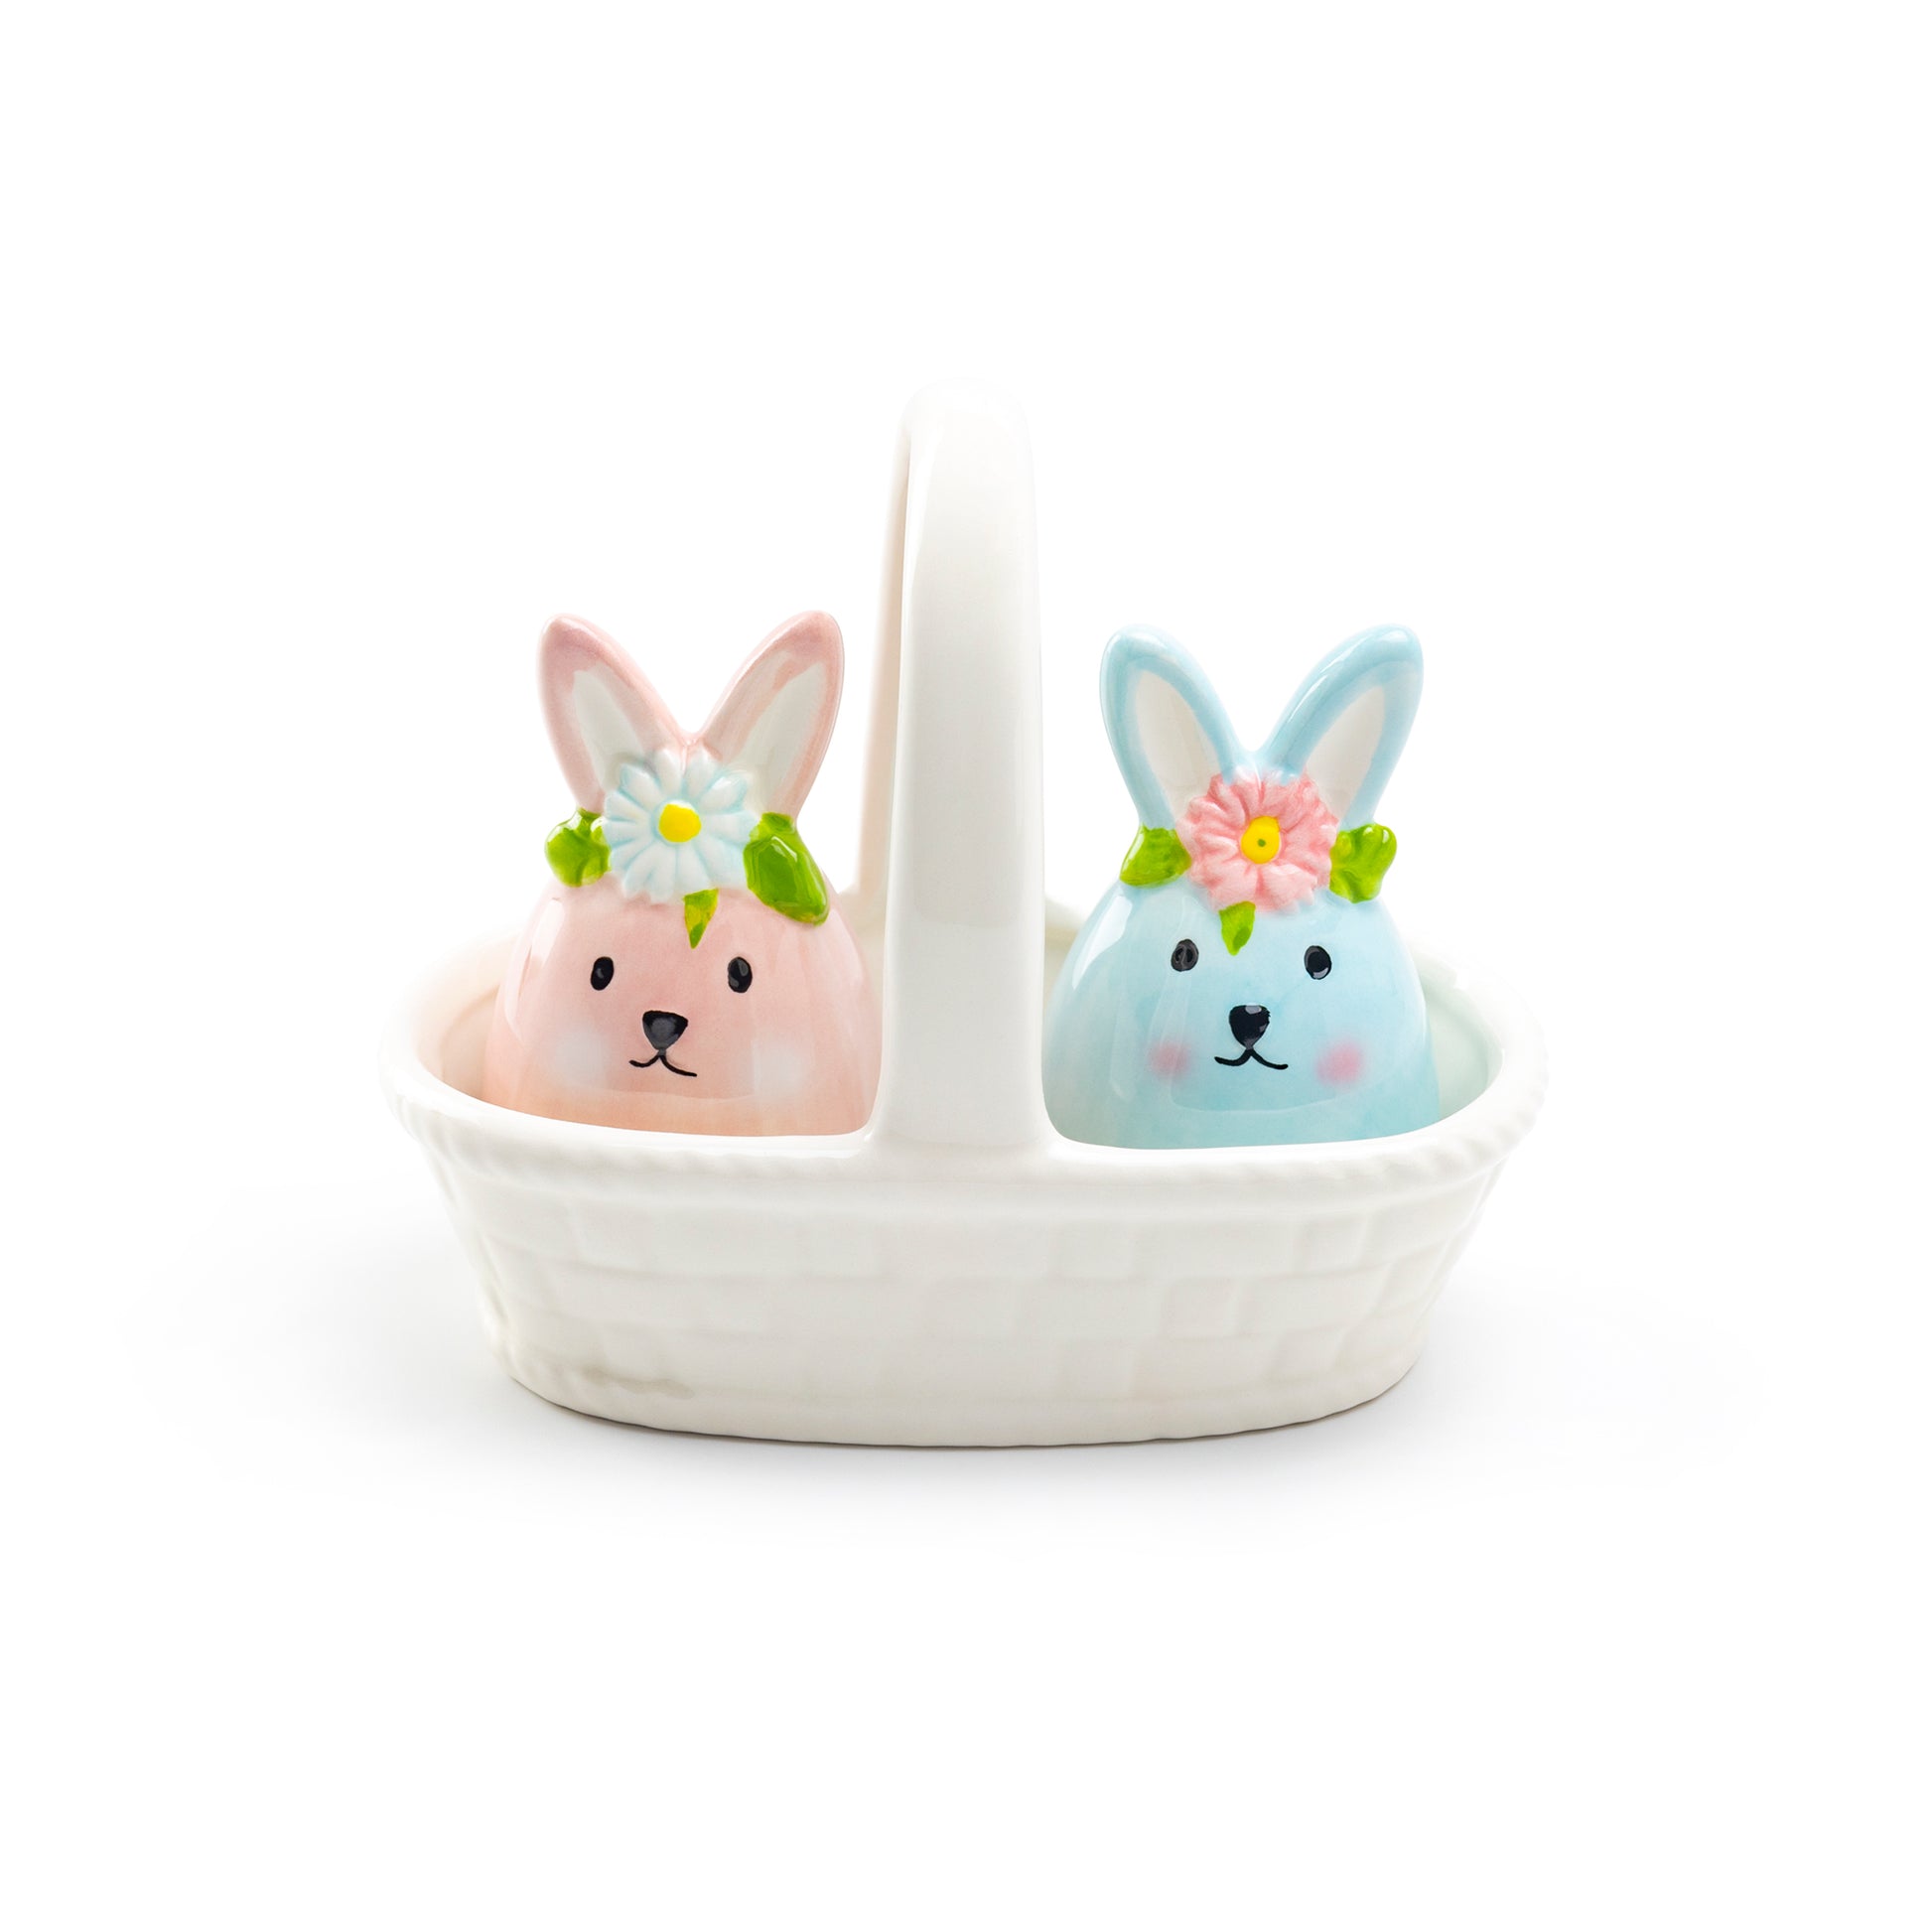 Potter's Studio Floral Bunny Basket Salt and Pepper Ceramic Shaker Set